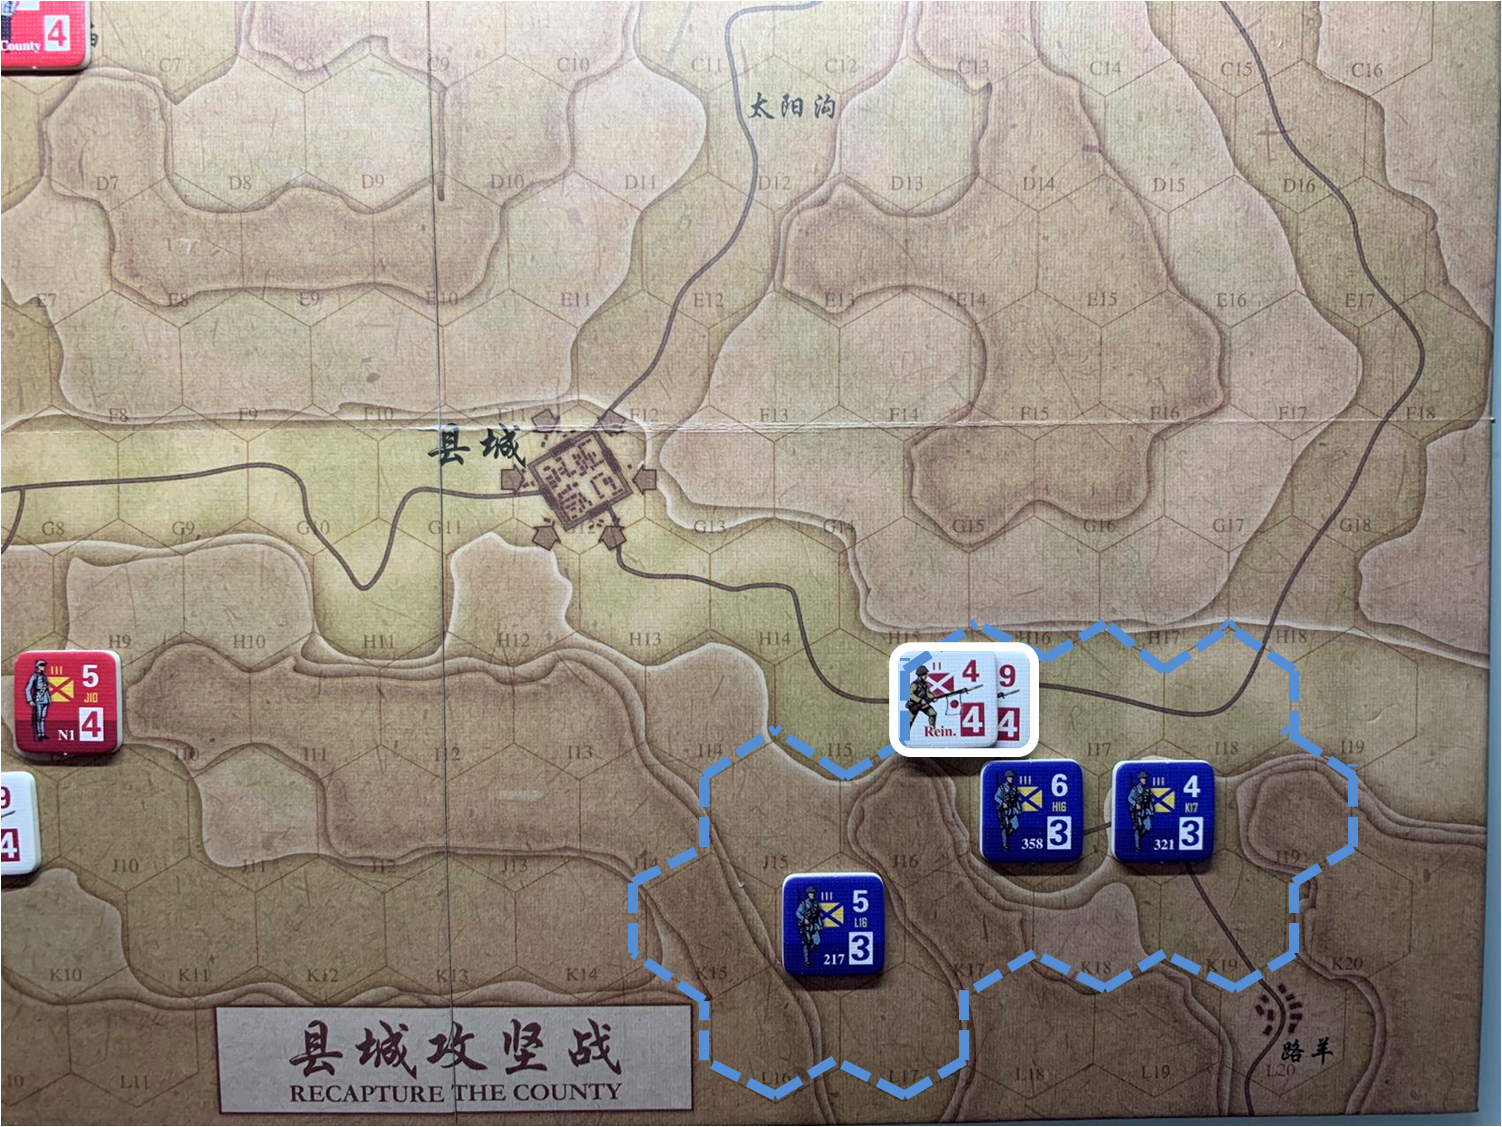 第三回合路羊方向日軍正規軍部隊（I16）對於移動命令2的執行結果，及附近國軍正規軍控制區覆蓋範圍